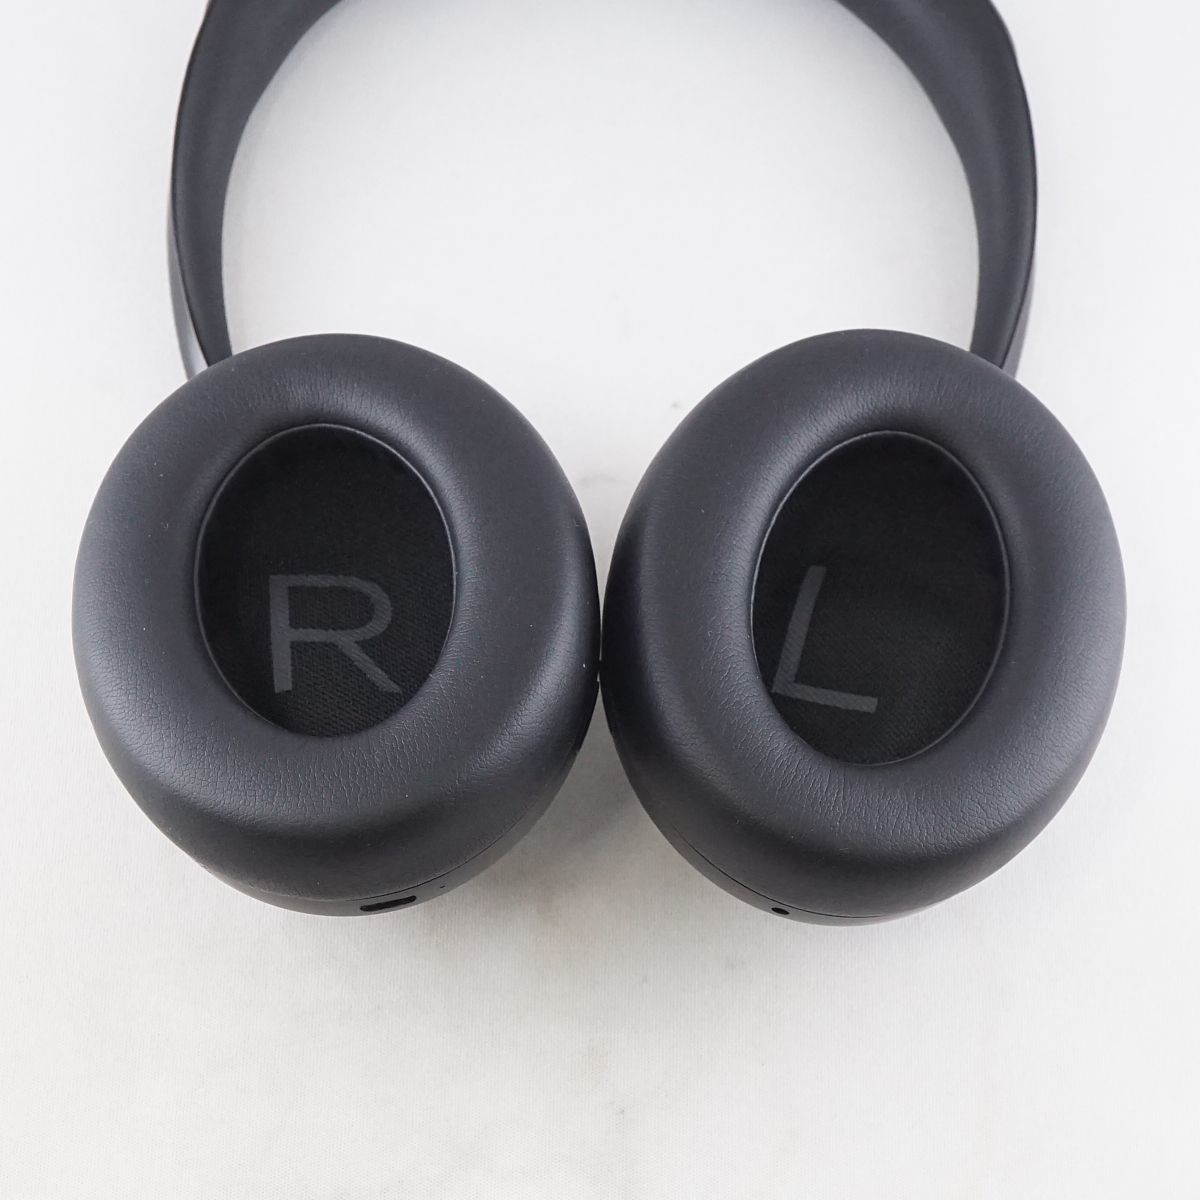 Bose Noise Cancelling Headphones 700 беспроводной наушники USED прекрасный товар ушные накладки новый товар NC700 шум отмена кольцо исправно работающий товар S V9581